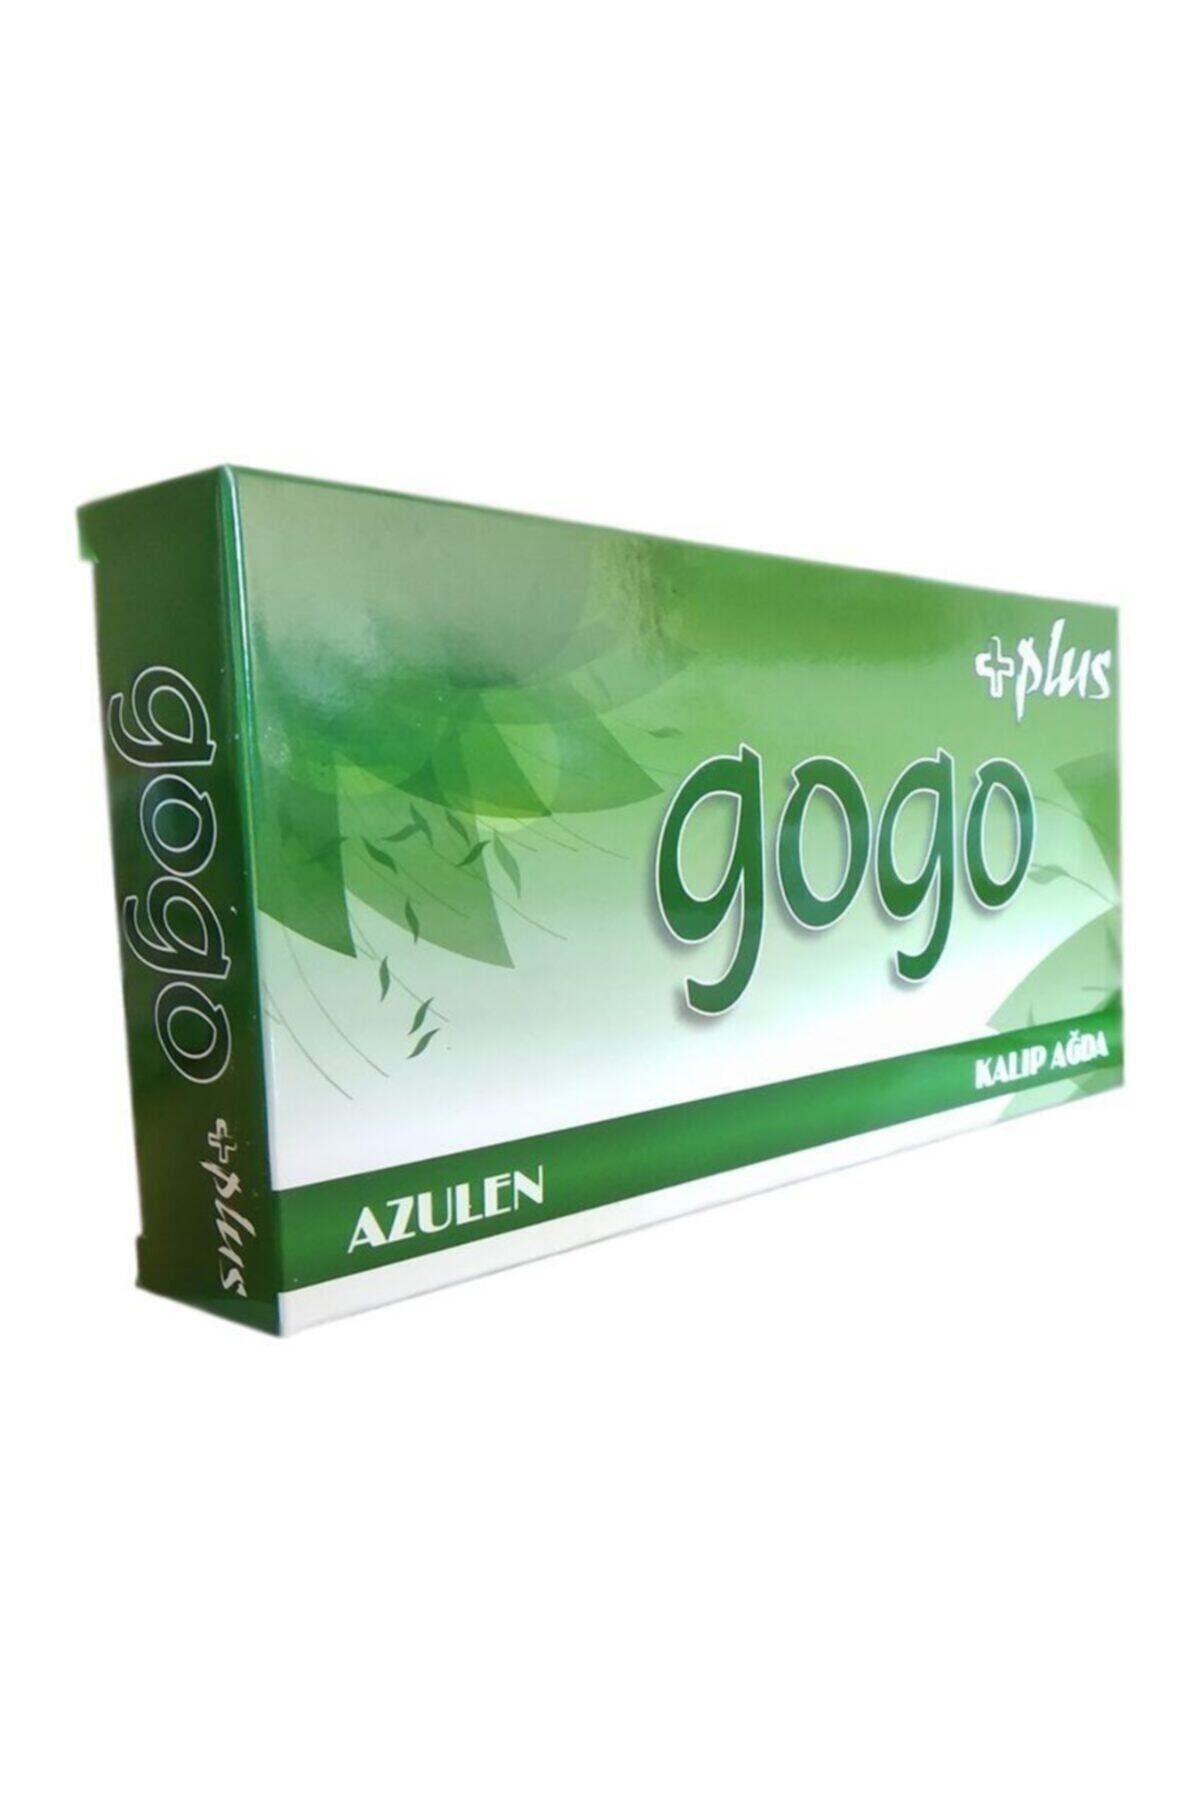 Gogo Plus Azulen Kalıp Ağda 380 gr